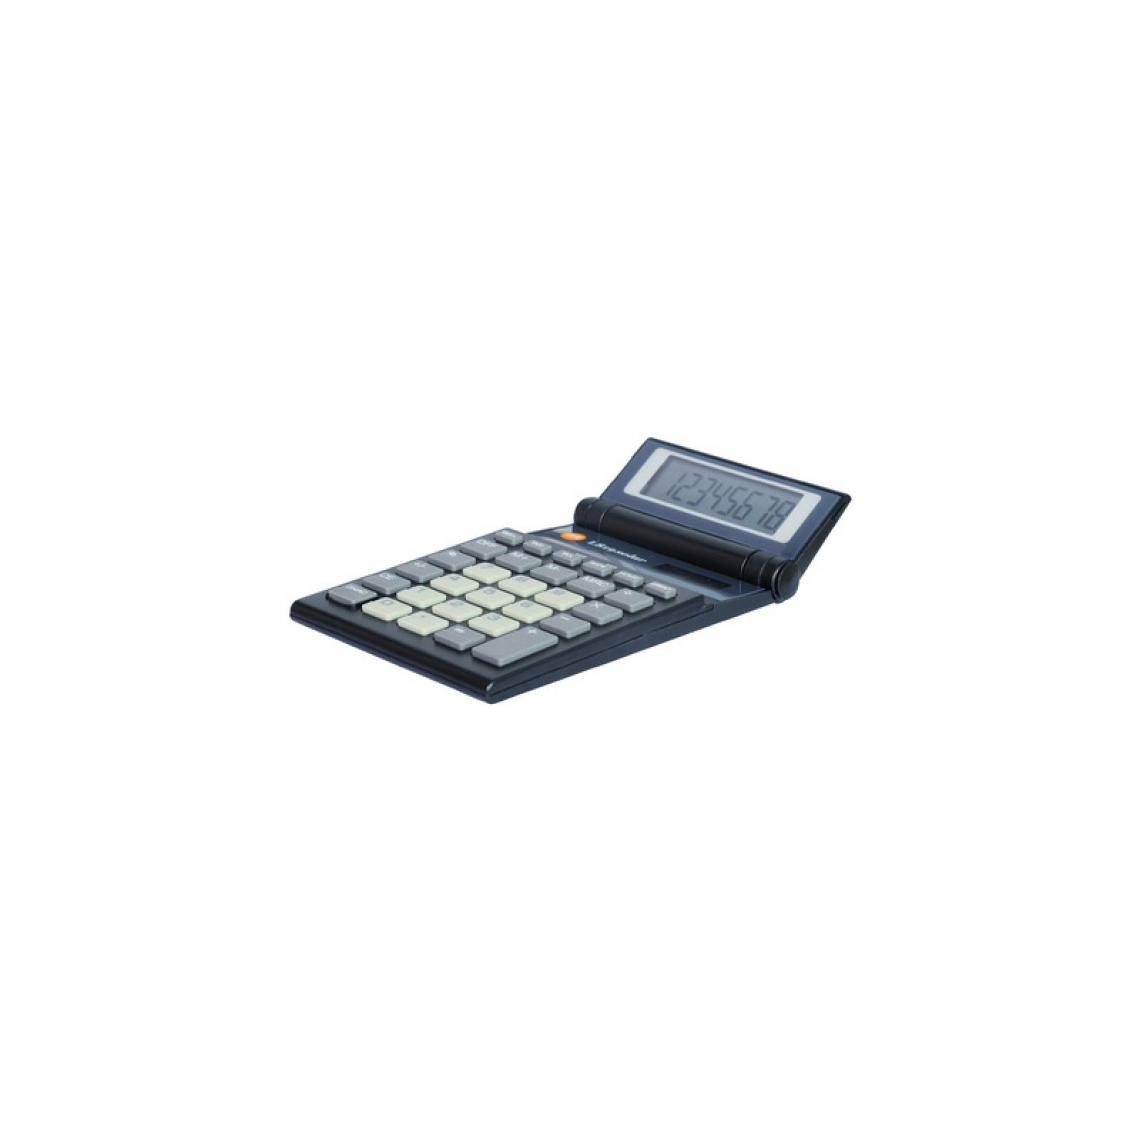 Triumph Montres - TRITON Calculatrices L-819 solar, noir () - Accessoires Bureau